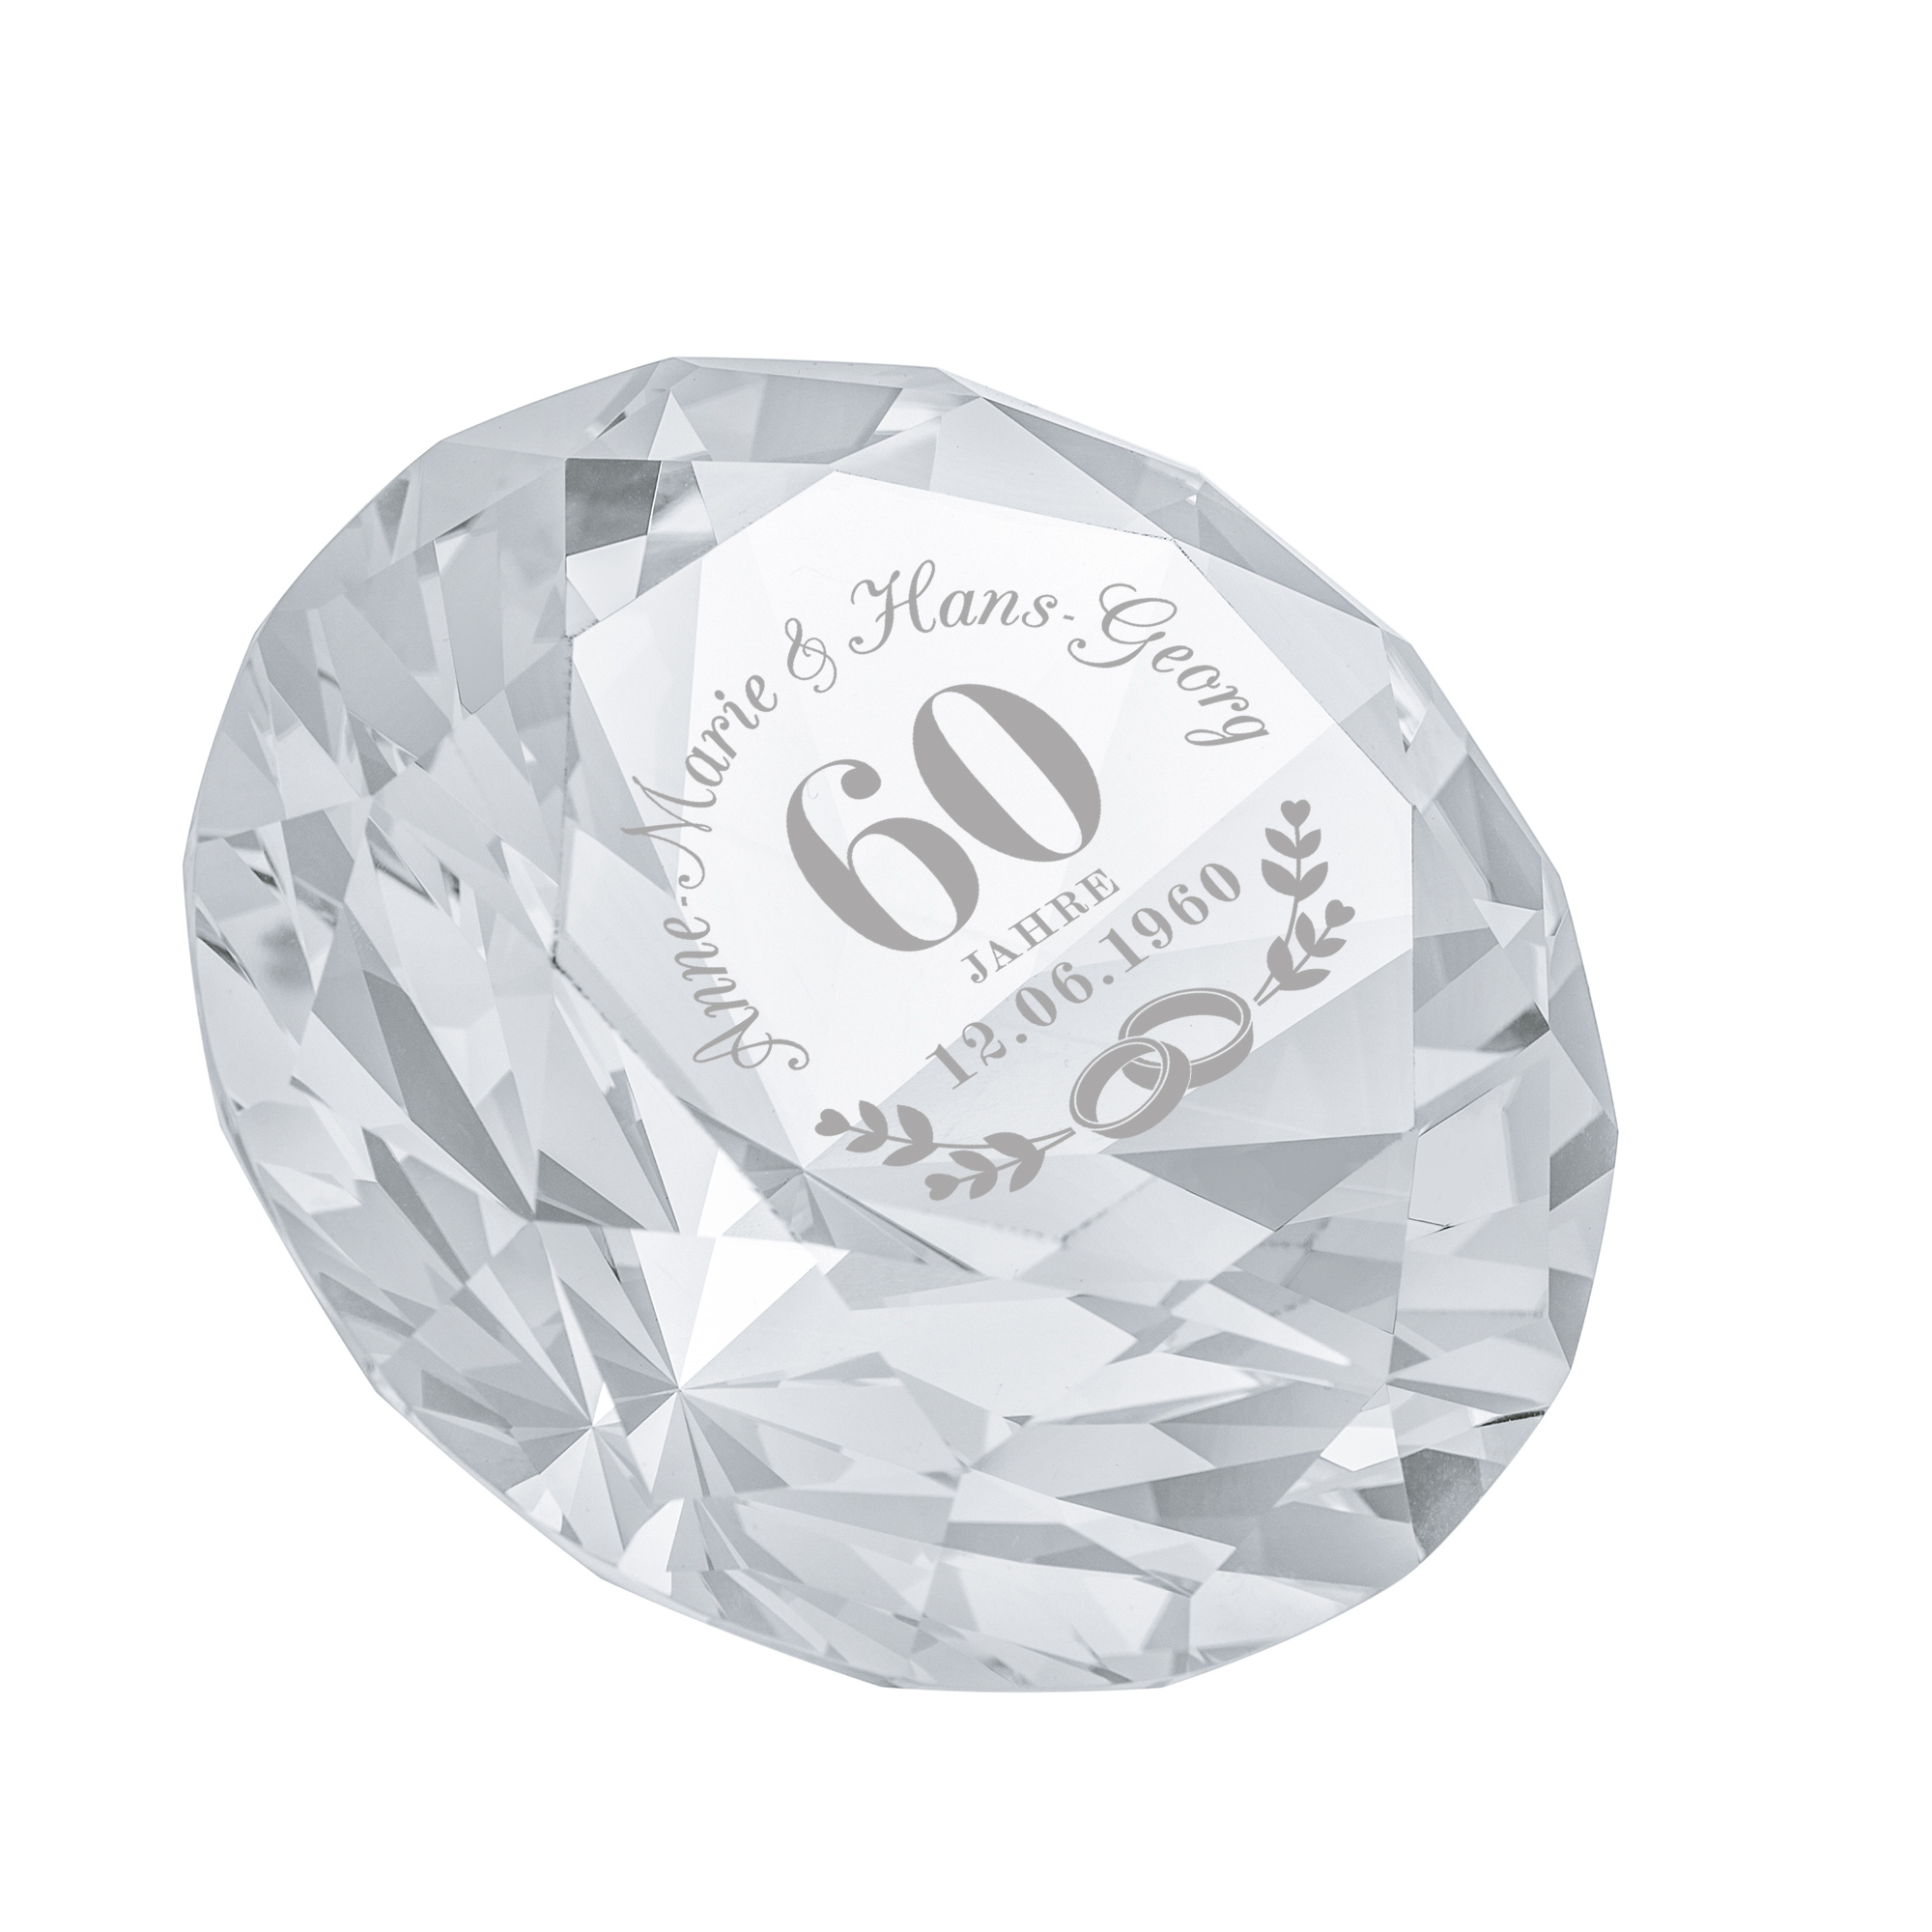 Kristall - Diamant - zur Diamanthochzeit - Personalisiert